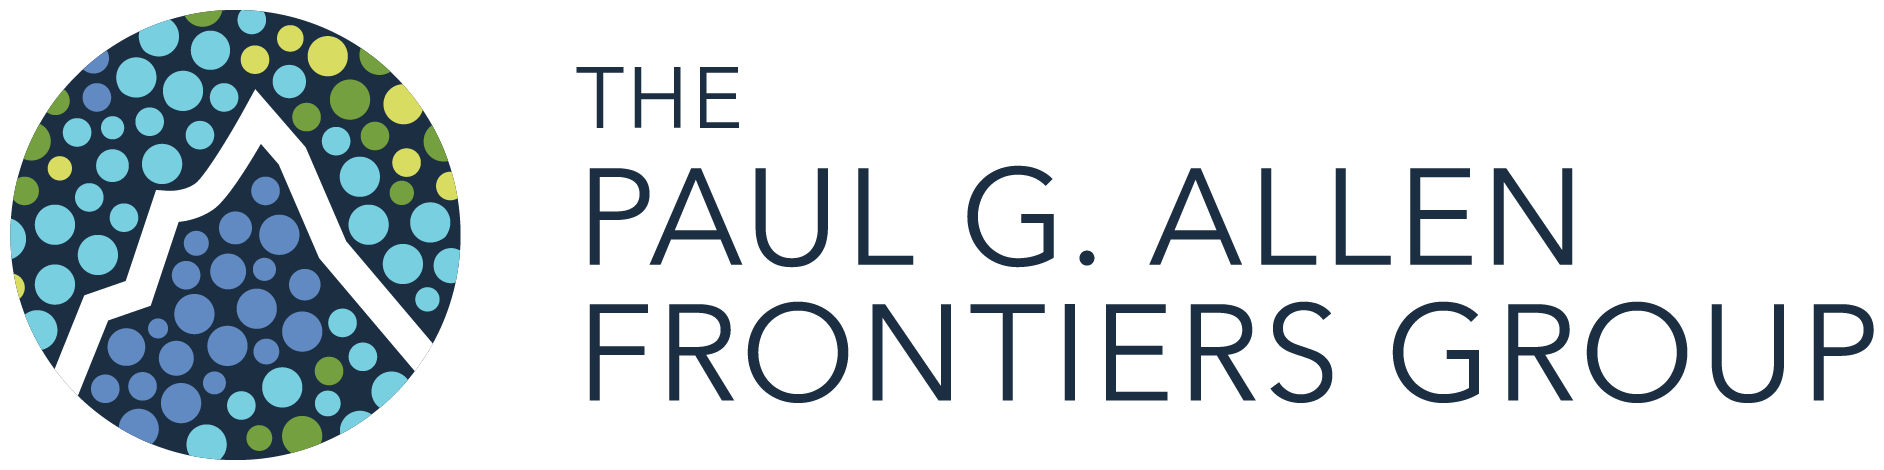 Paul G. Allen Frontiers Group logo